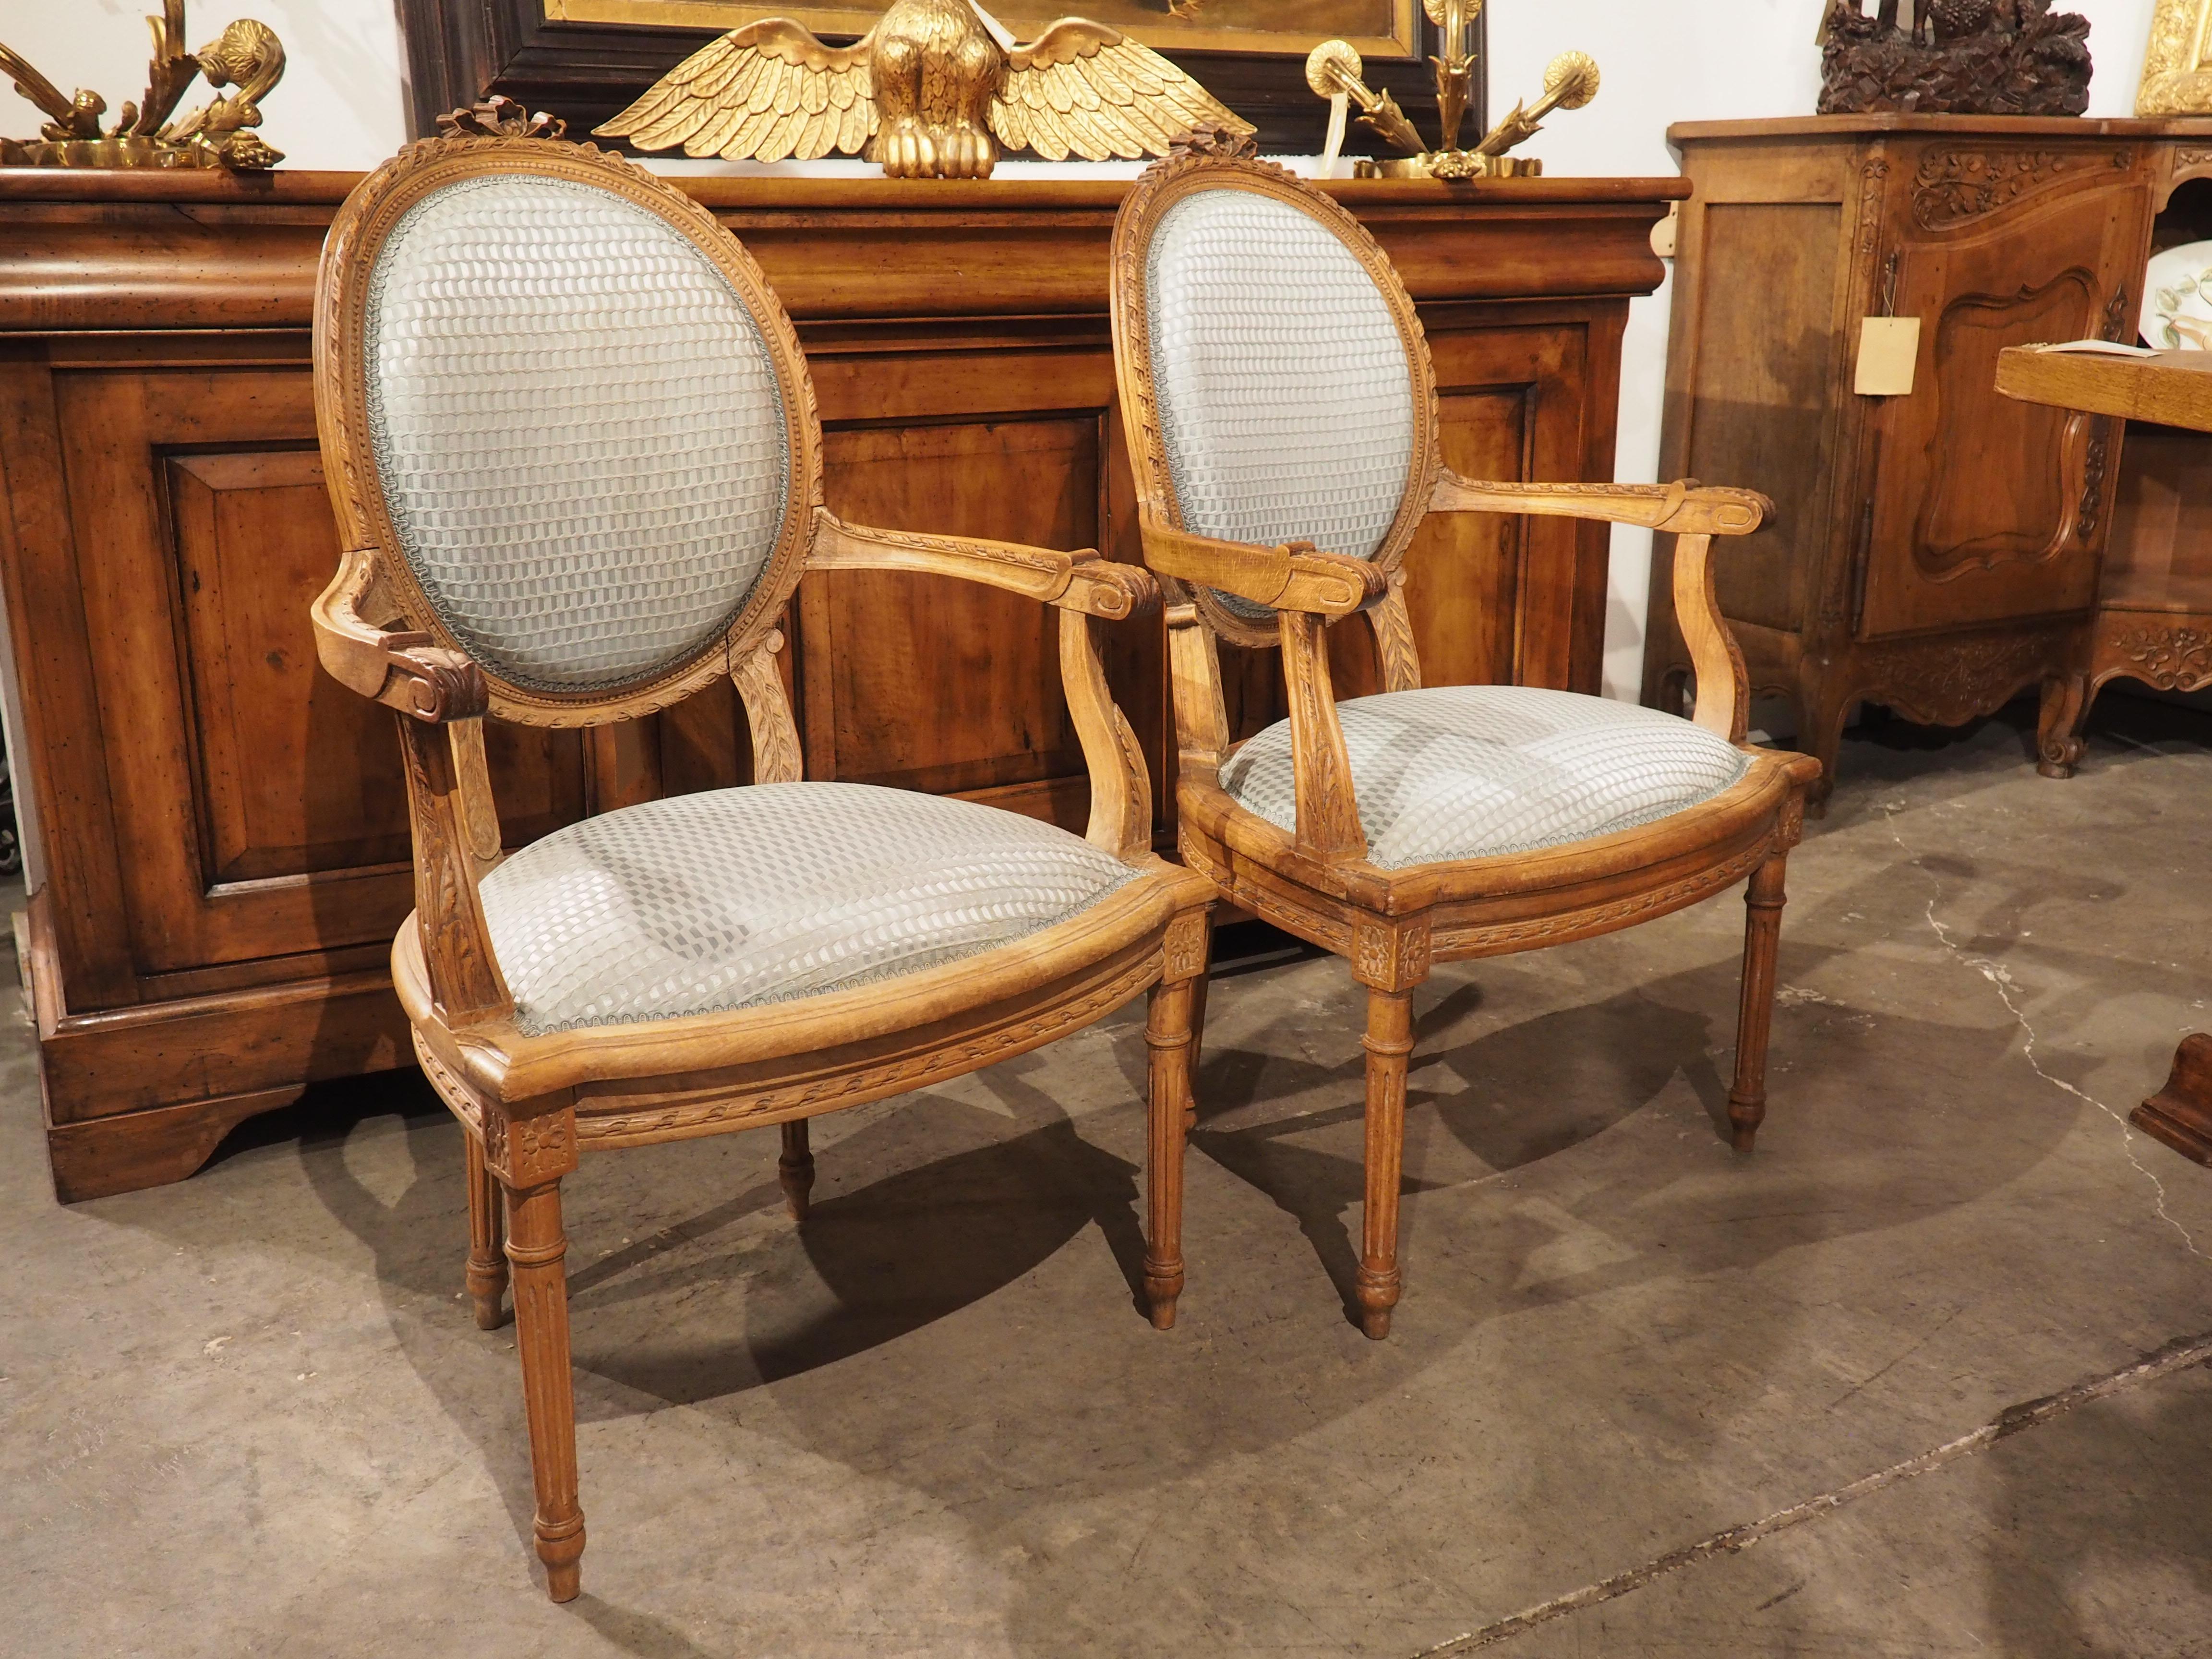 Dieses Paar französischer Sessel im Louis-XVI-Stil wurde Anfang bis Mitte des 19. Jahrhunderts von Hand geschnitzt und ist an den Sitzflächen und Rückenlehnen mit schöner blauer Seide gepolstert. Die Polsterung hat ein Moiré-Wellenmuster und eine